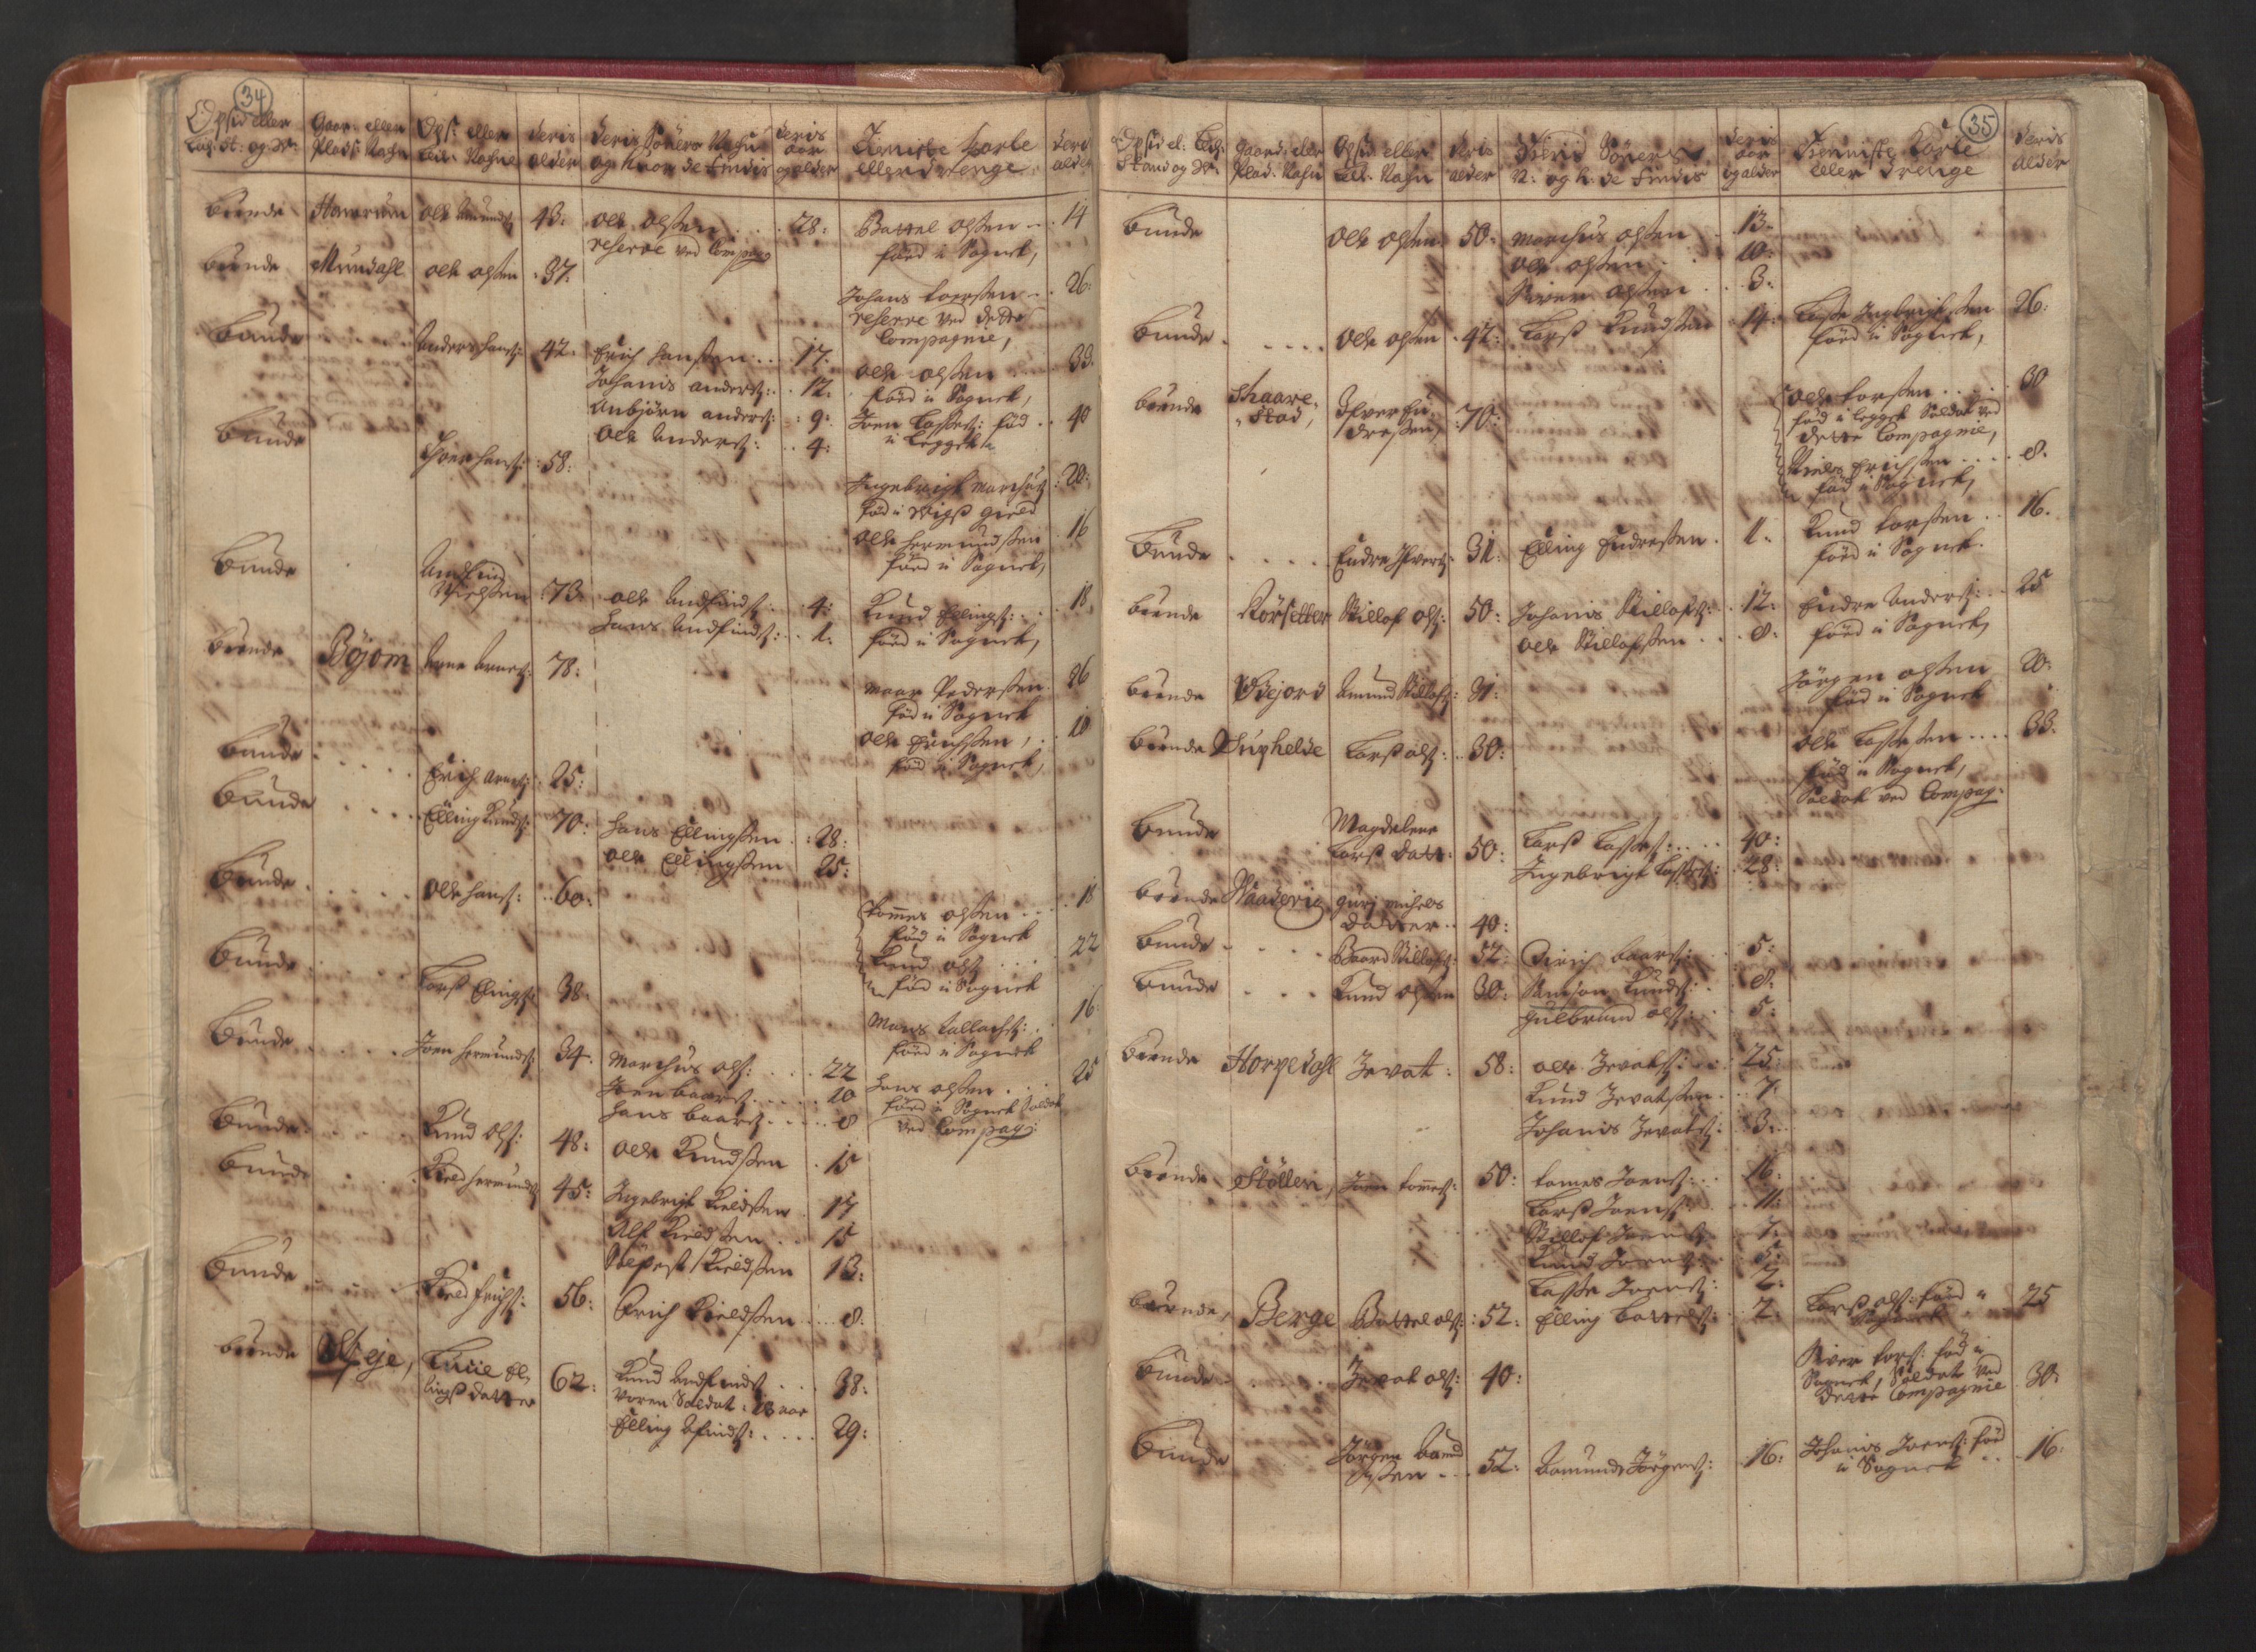 RA, Manntallet 1701, nr. 8: Ytre Sogn fogderi og Indre Sogn fogderi, 1701, s. 34-35